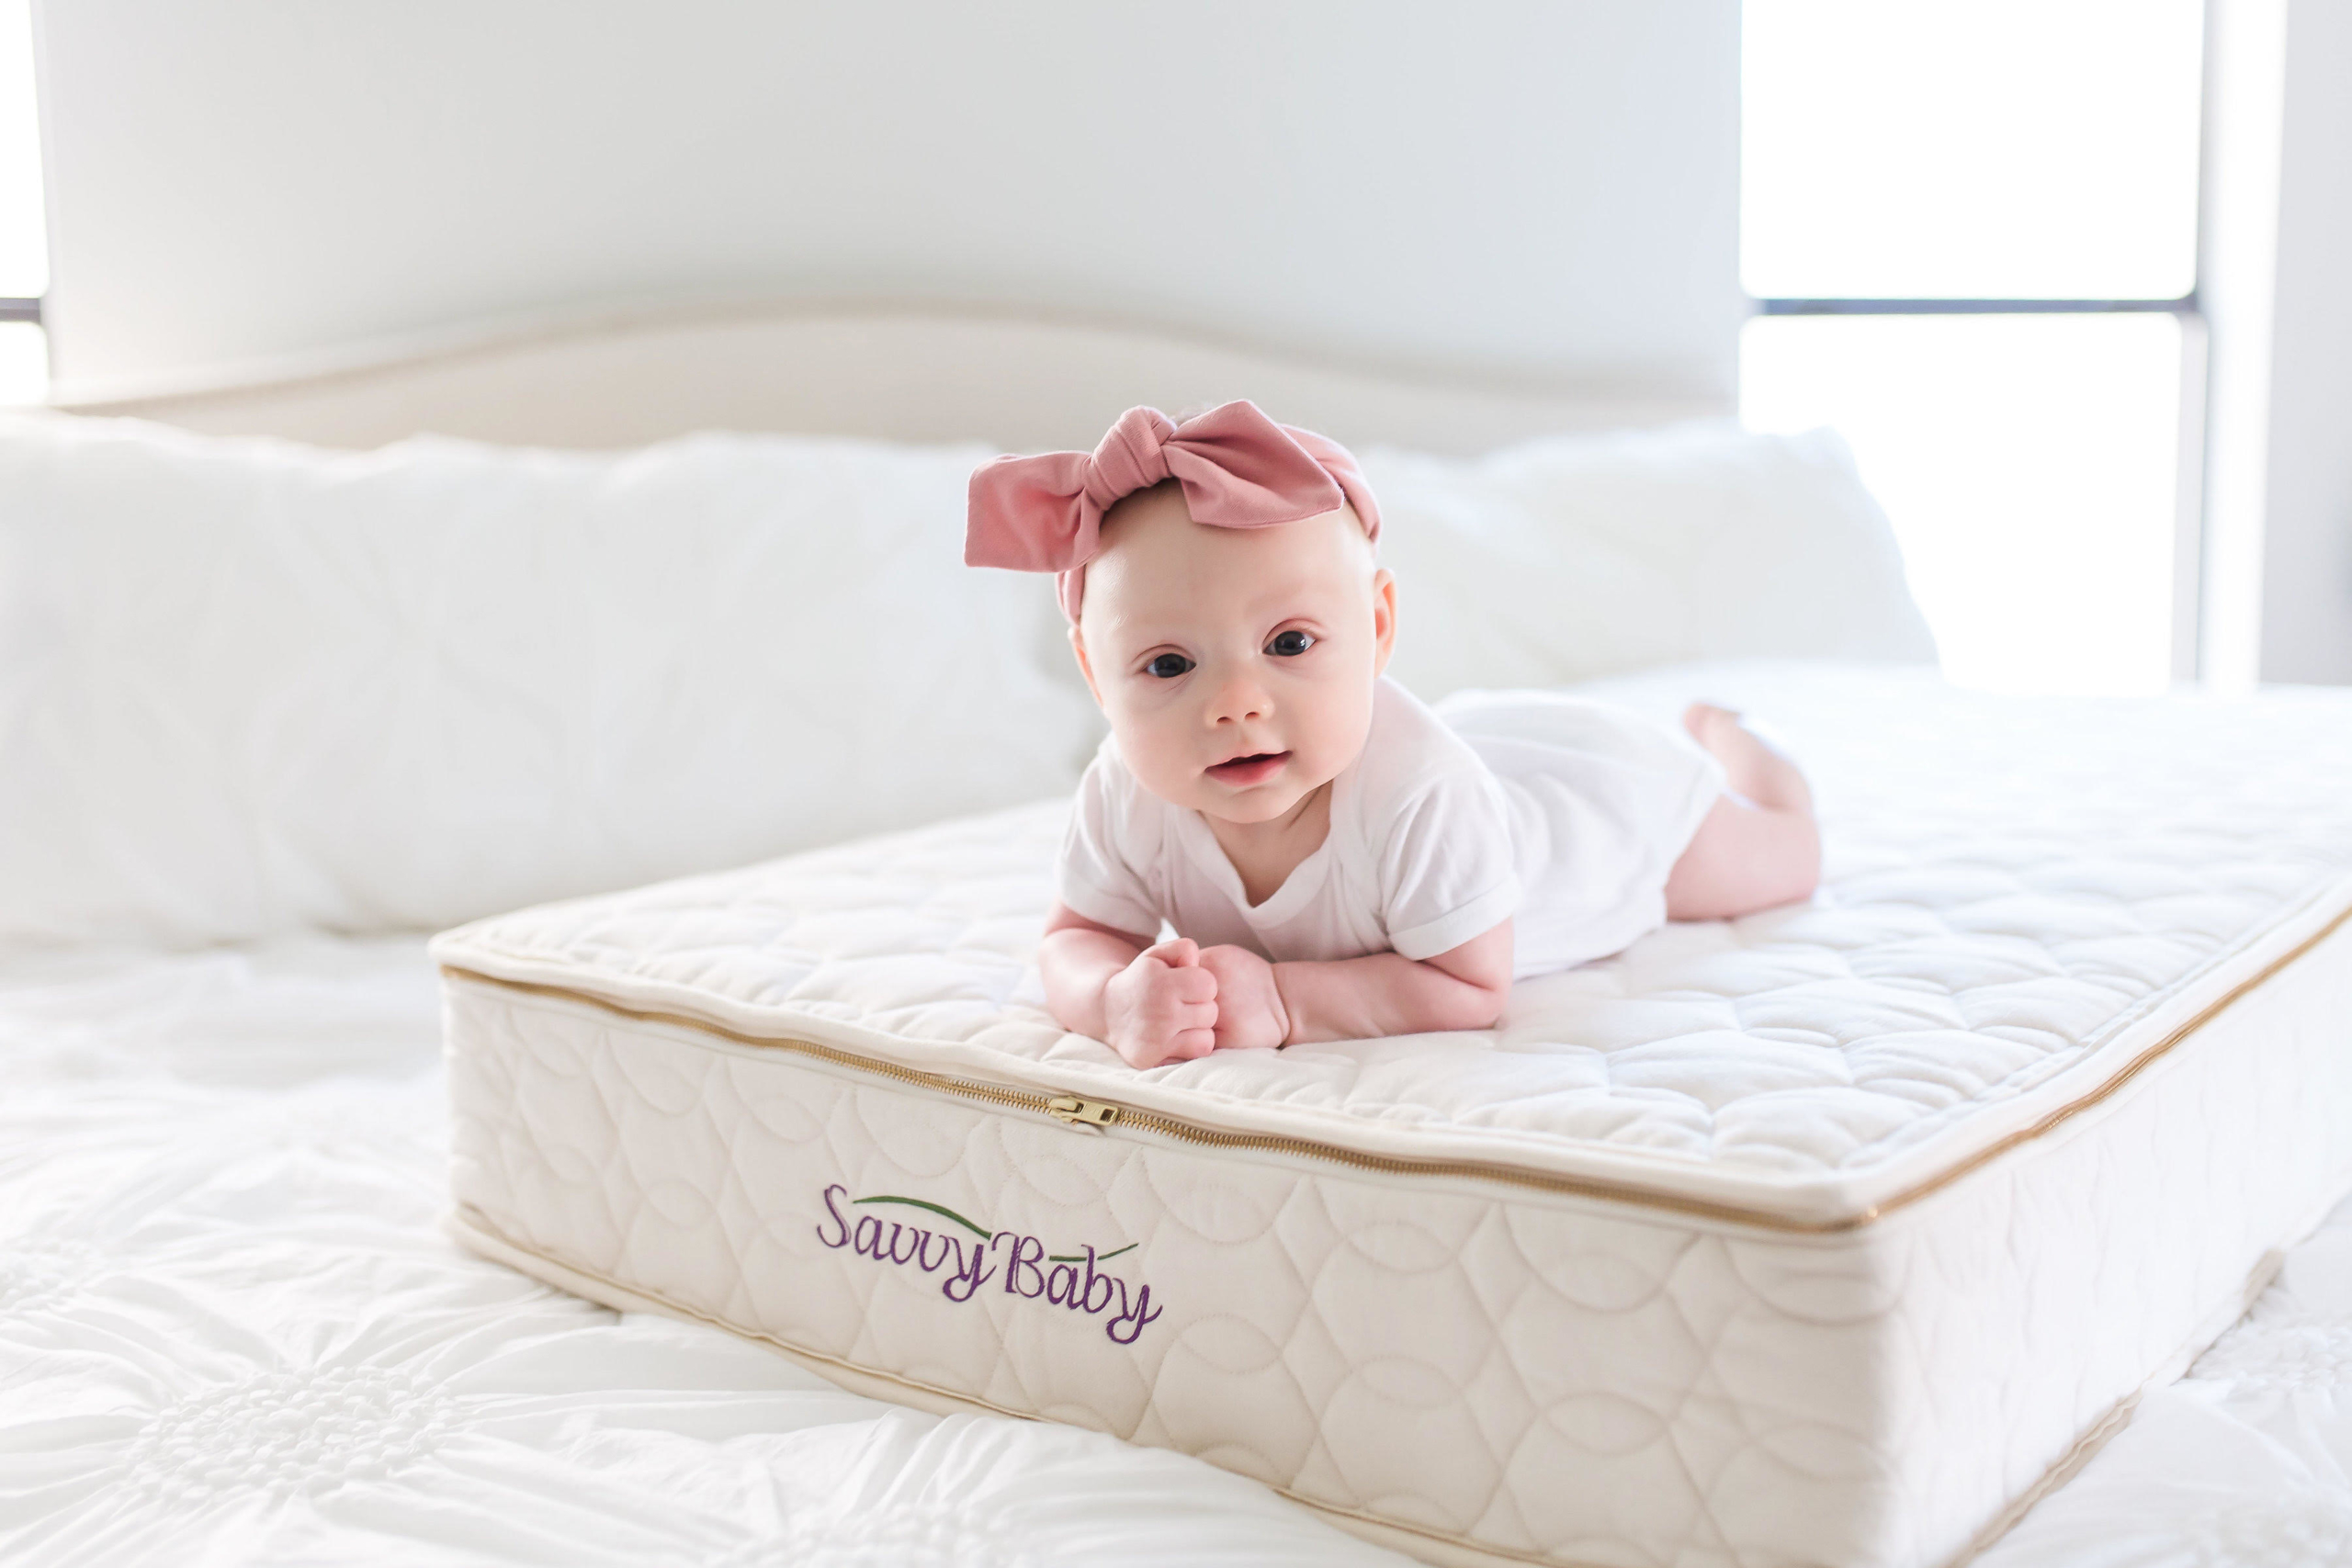 crib / toddler baby mattress